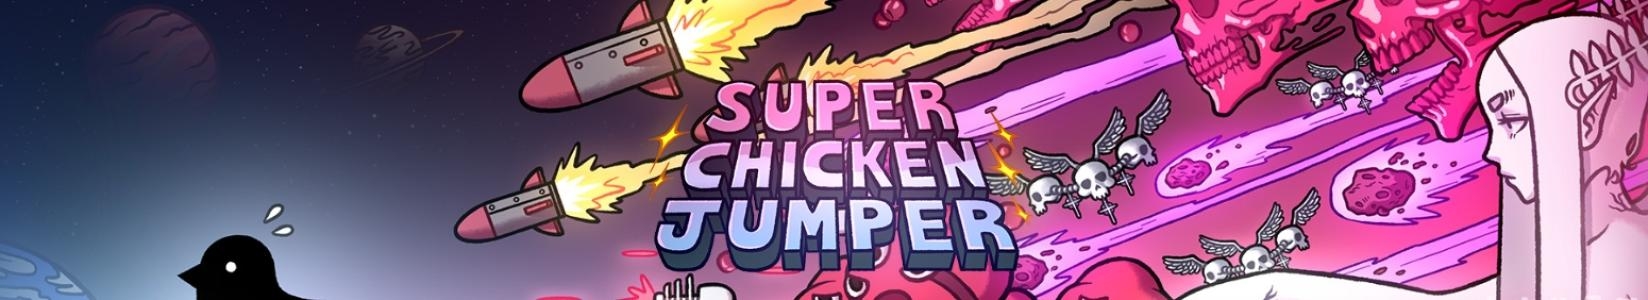 SUPER CHICKEN JUMPER banner